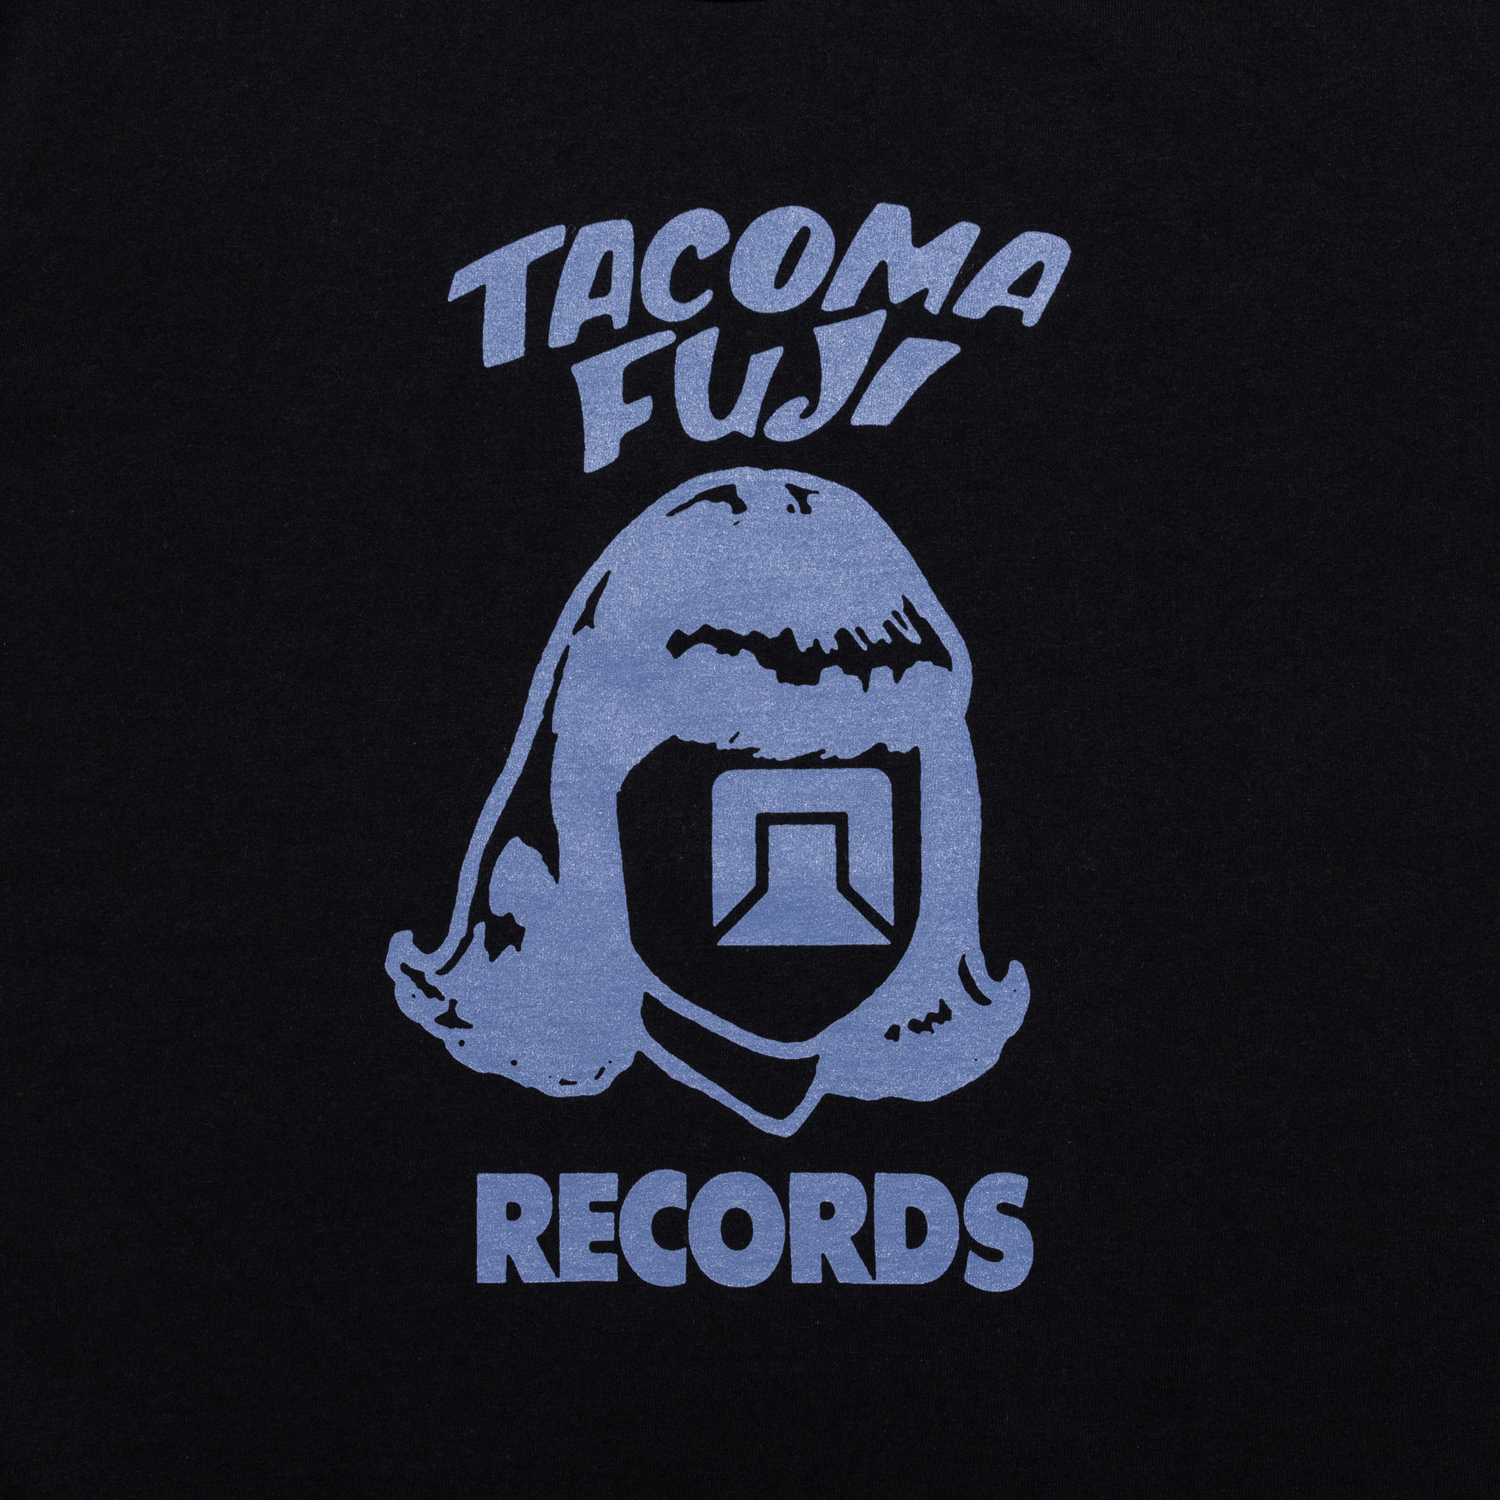 TACOMA FUJI RECORDS LOGO Tee ’24 designed by Tomoo Gokita